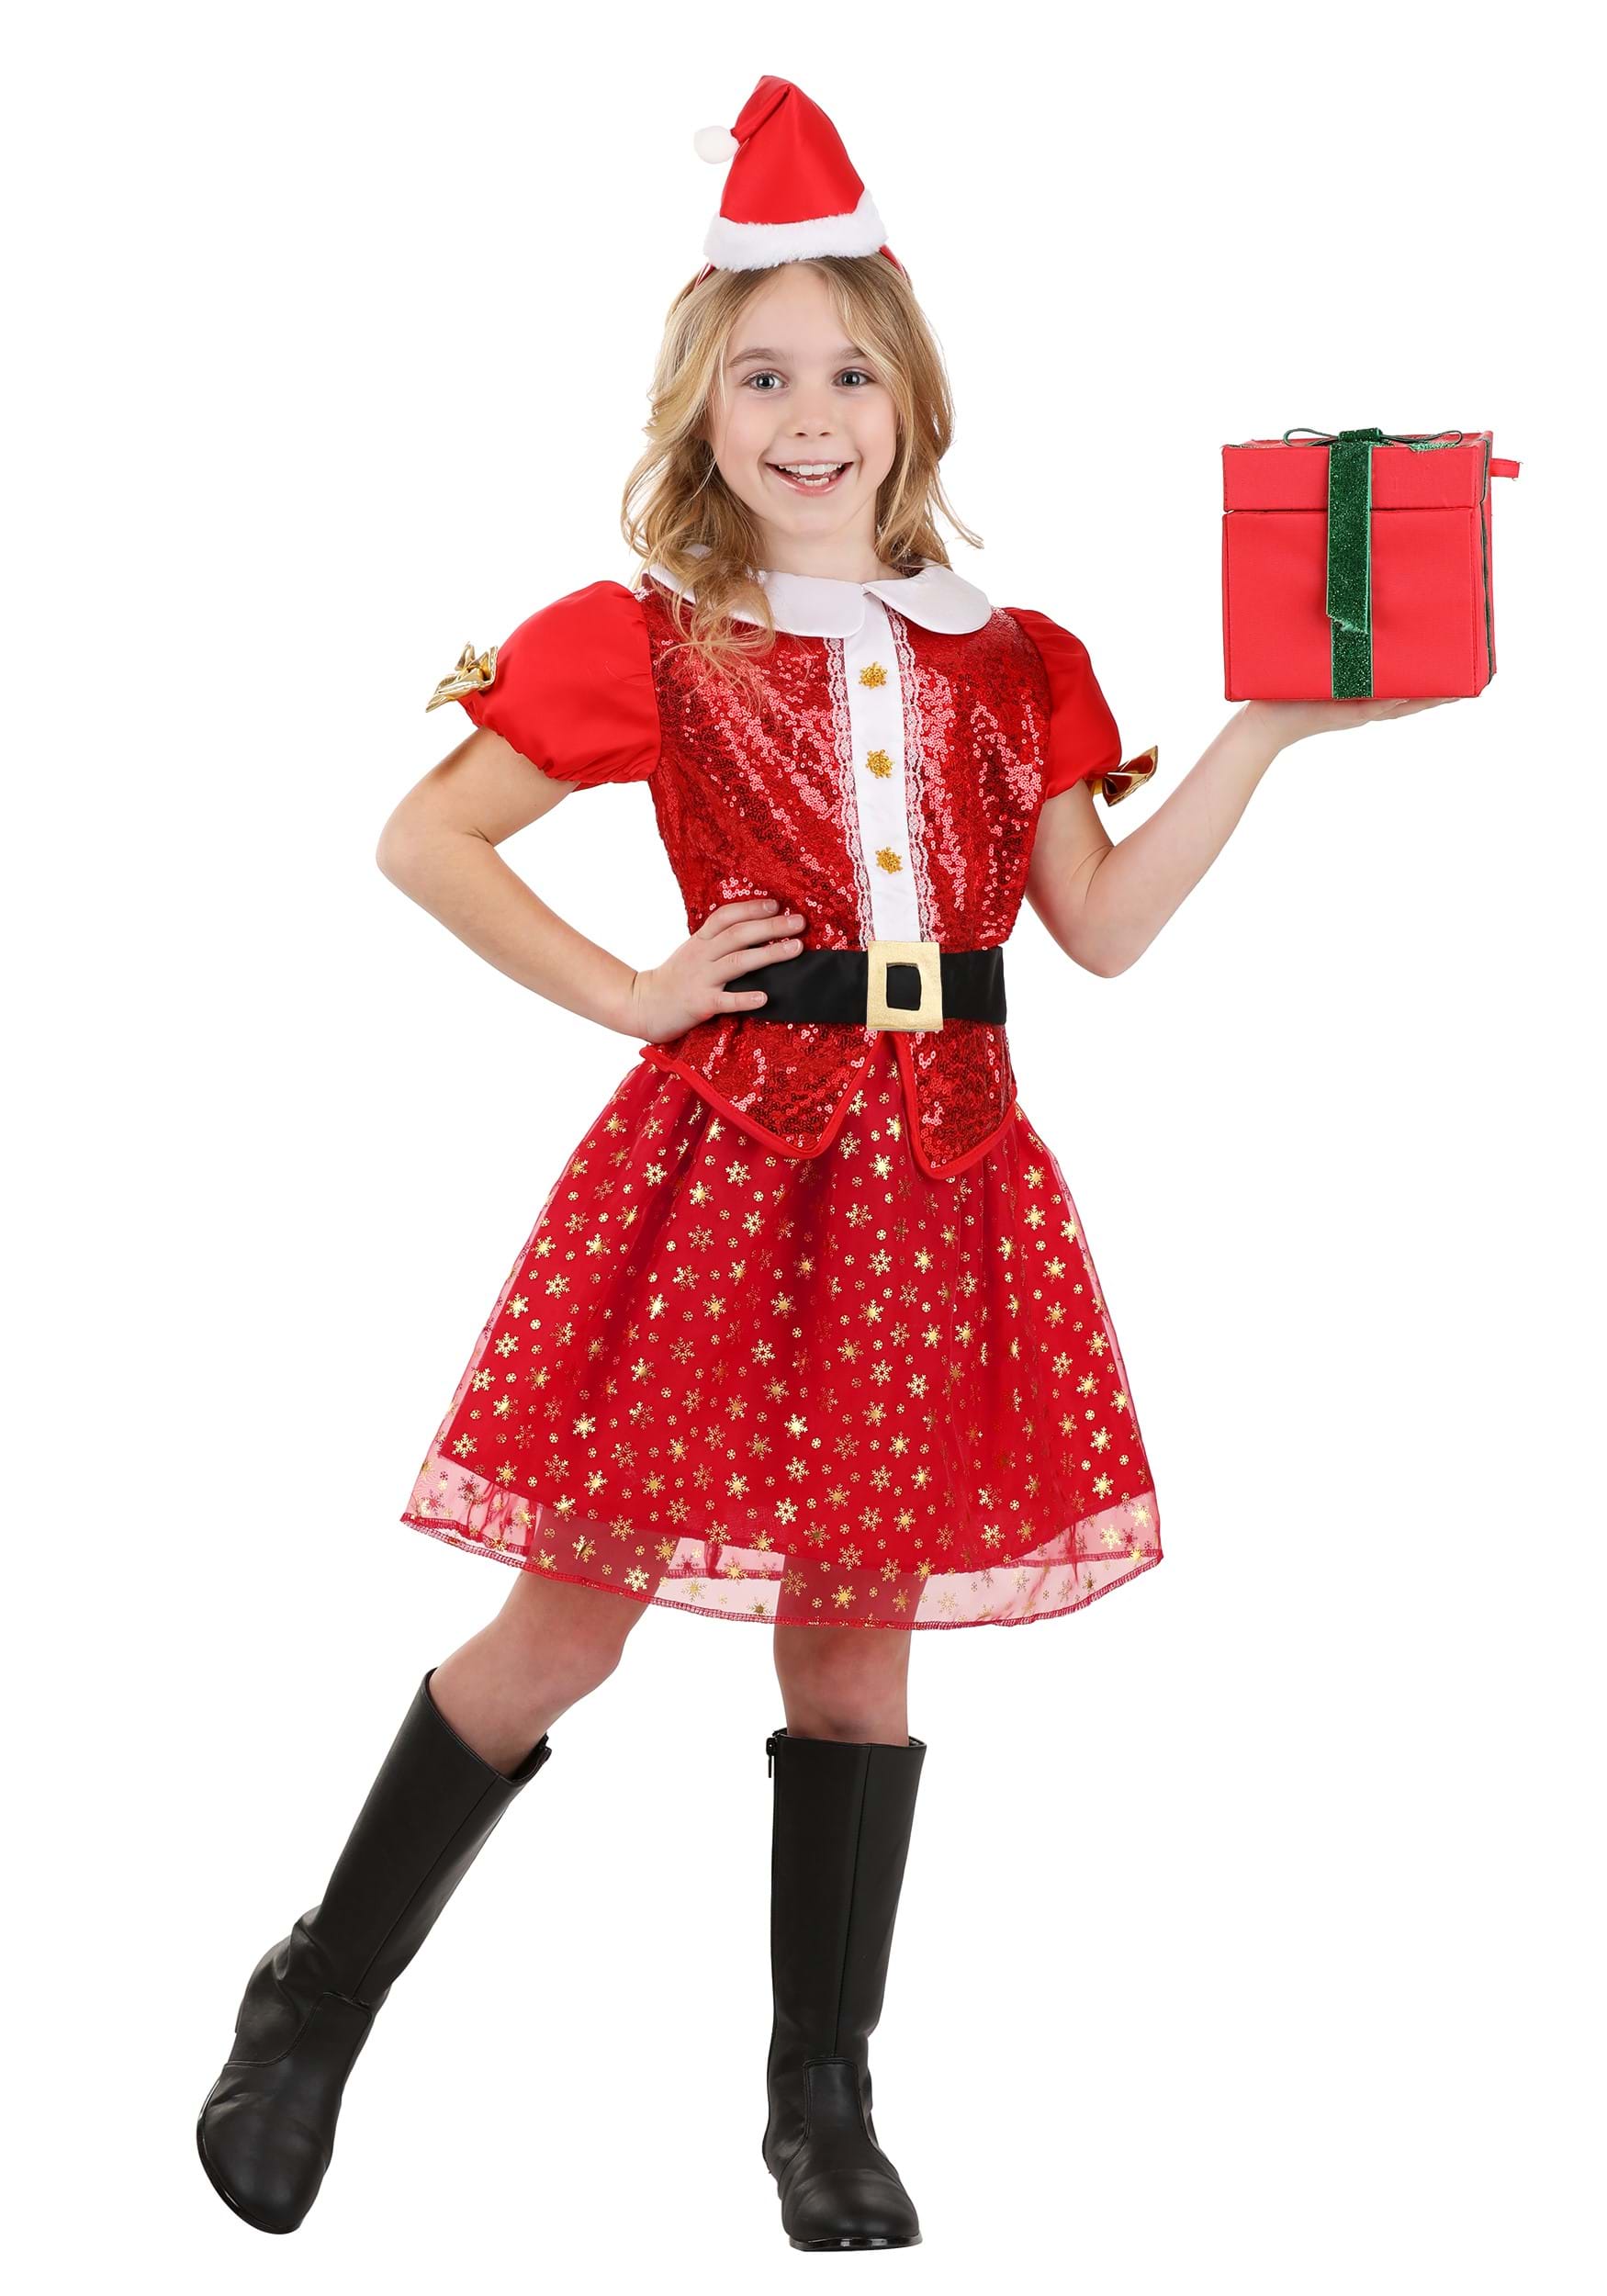 Raggedy Ann Christmas Felt & Sequin 6 Ornaments Kit **Limited Availability**